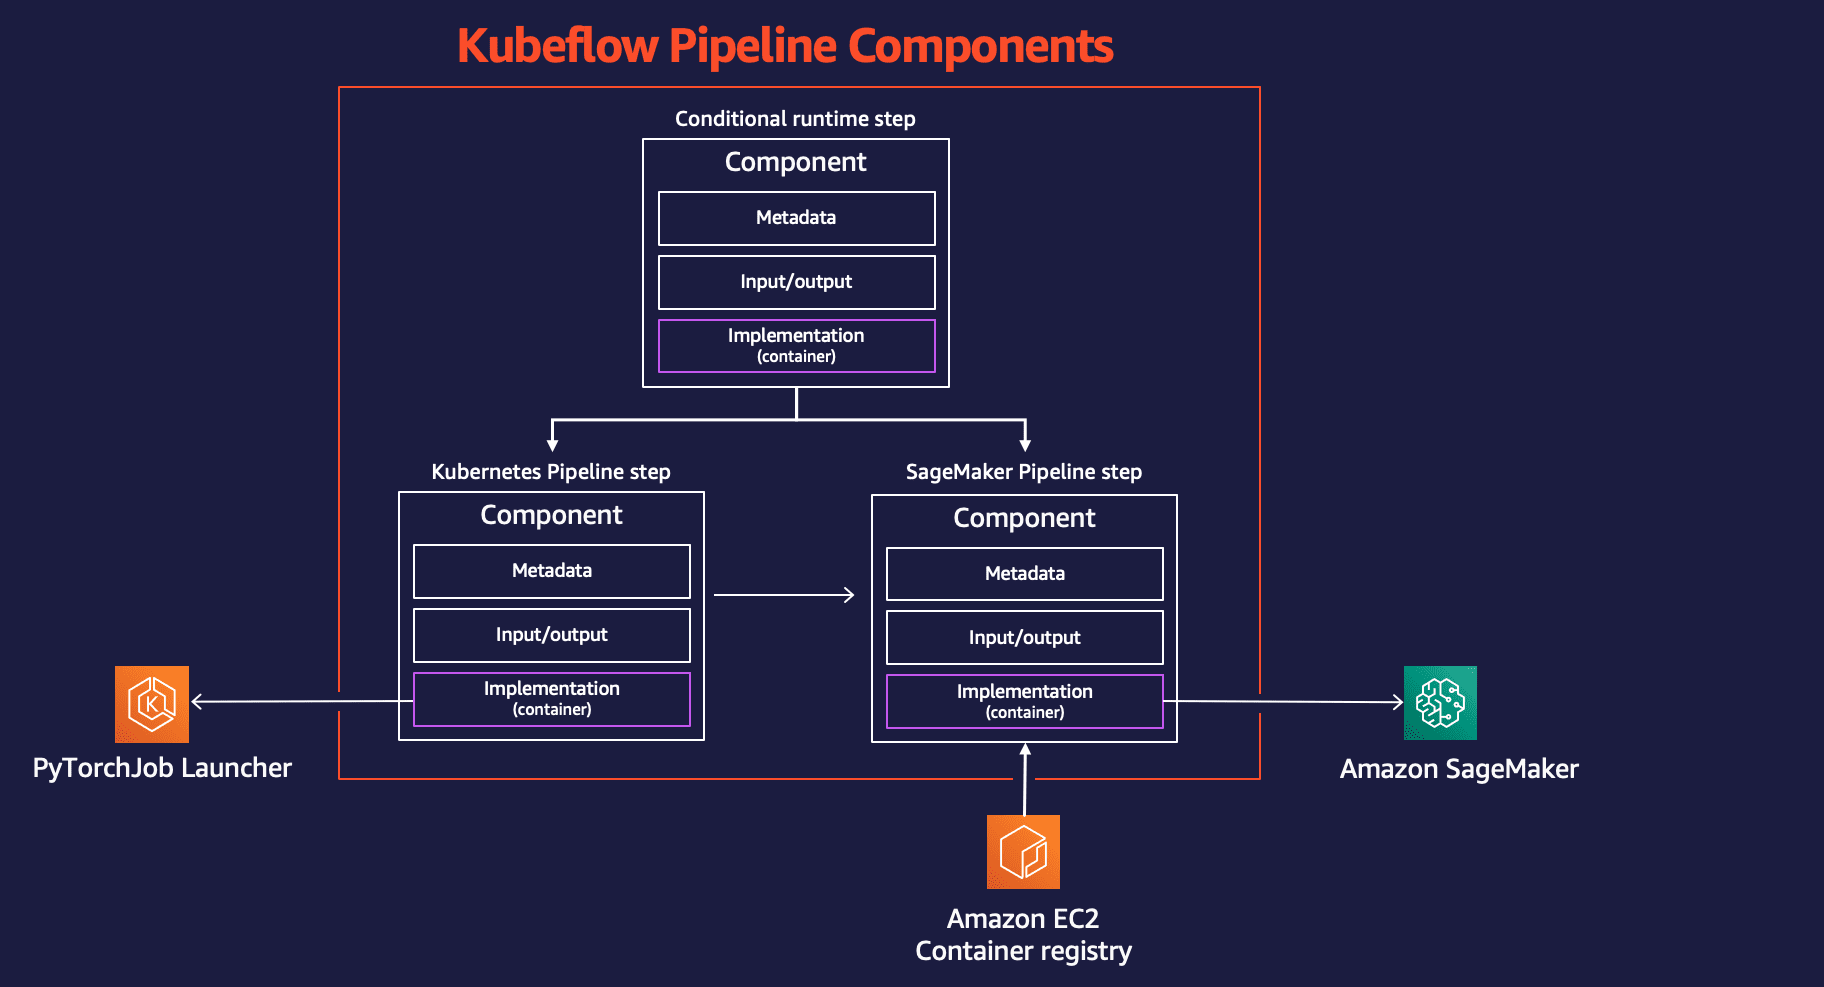 Kubeflow Pipelines components